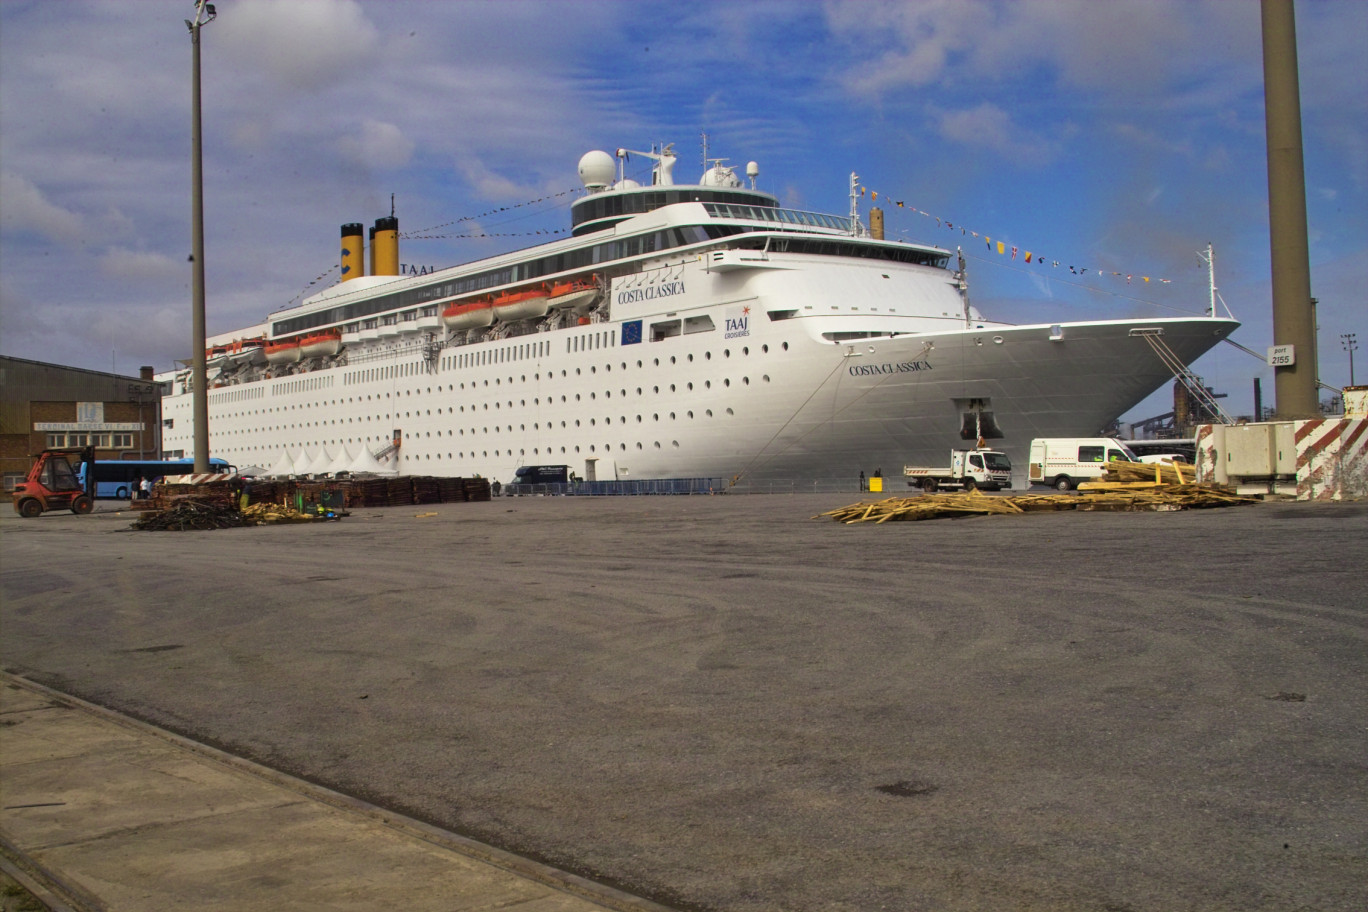 D’une longueur de 221 mètres et d’une capacité de 1200 passagers adultes, le « Costa Classica » est le plus important des paquebots de croisière accueillis sur le site.